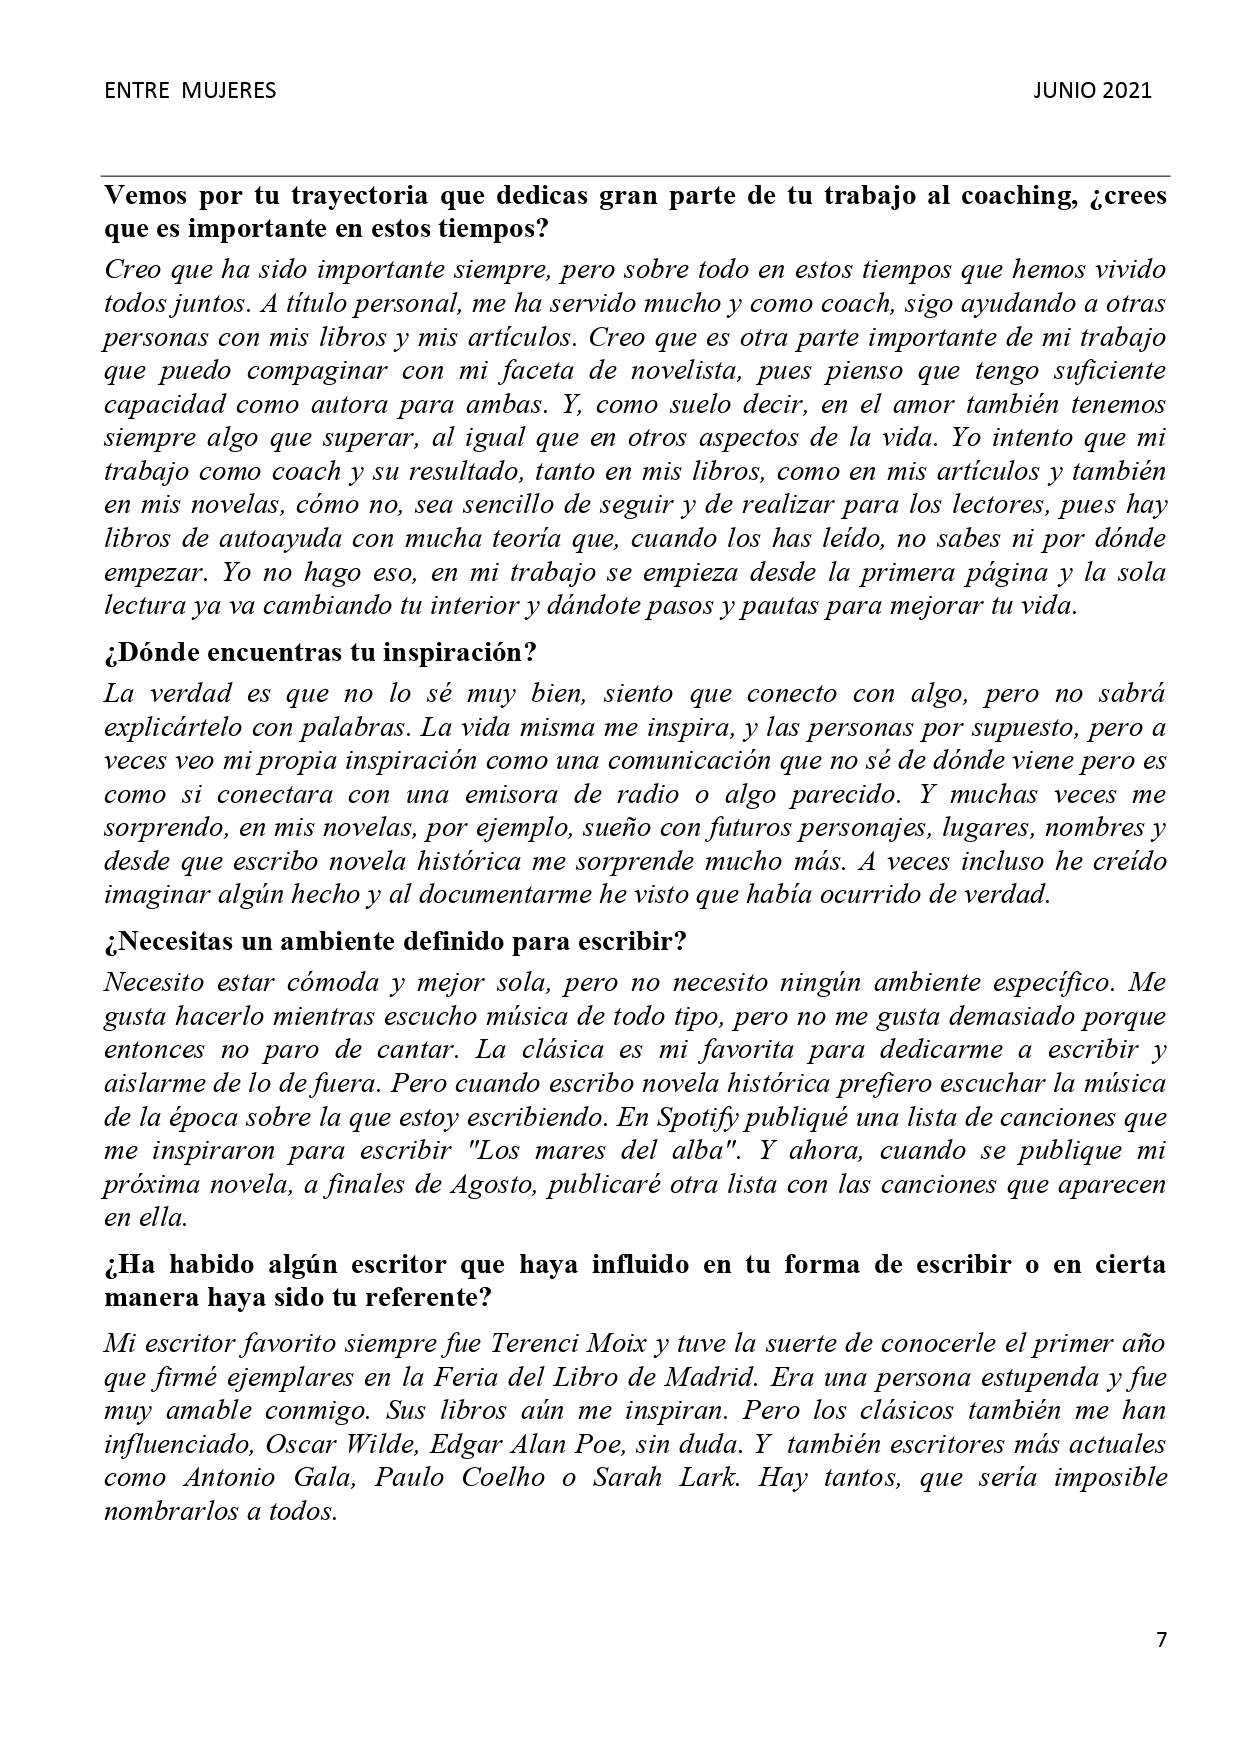 HALLAR EL BIENESTAR A TRAVÉS DE LA ESCRITURA, pag 2, INTEGRAL 5-2007, Mar Cantero Sánchez